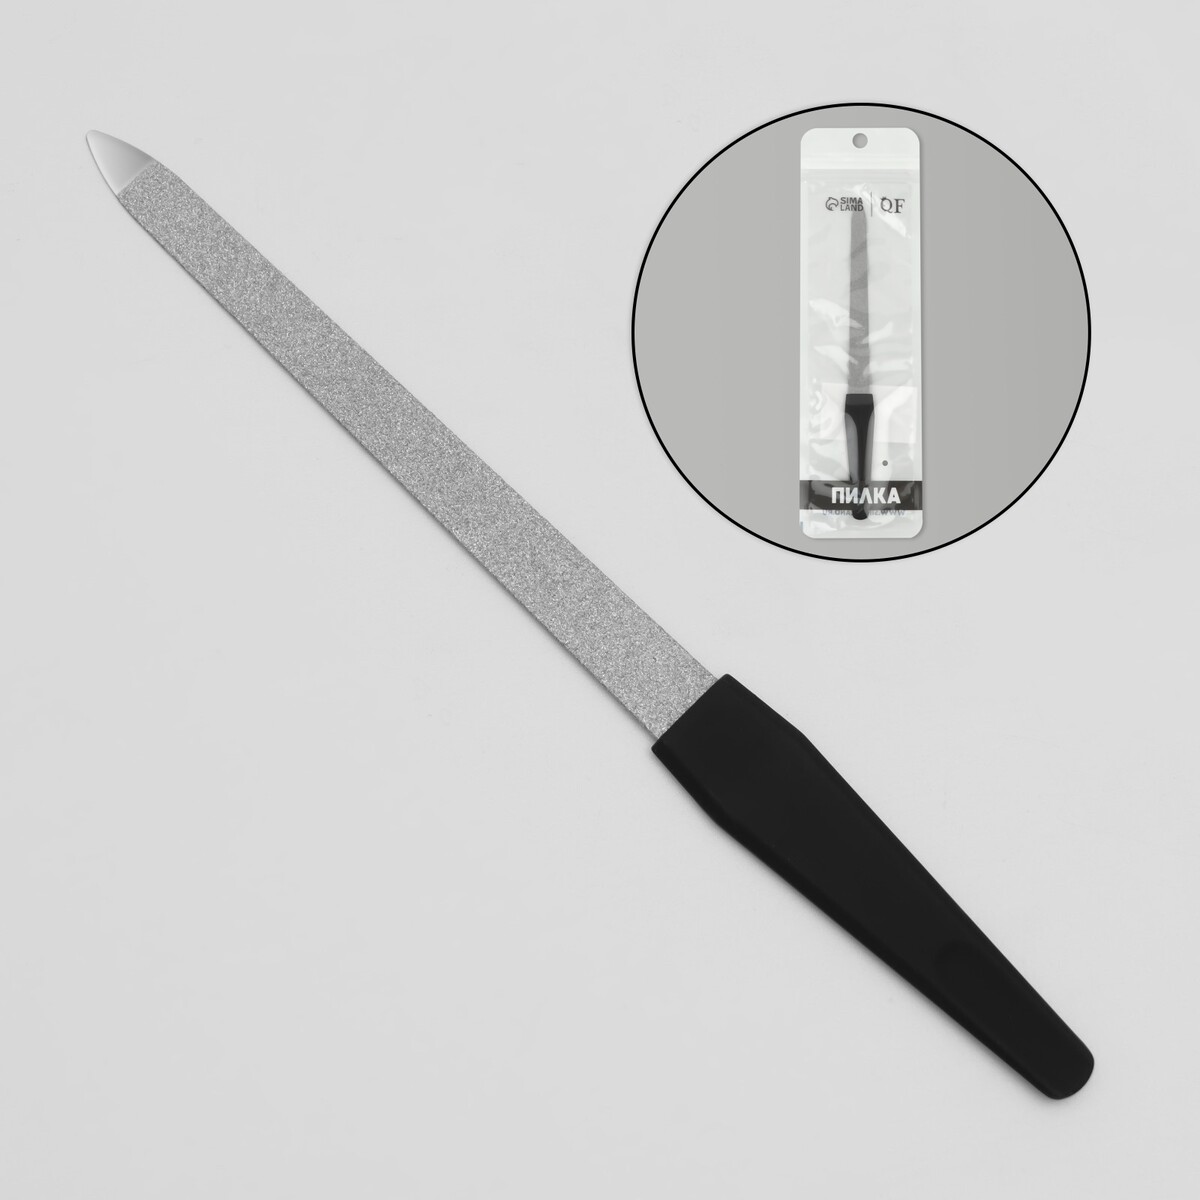 Пилка металлическая для ногтей, прорезиненная ручка, 17 см, цвет серебристый/черный пилка для искусст и натур ногтей